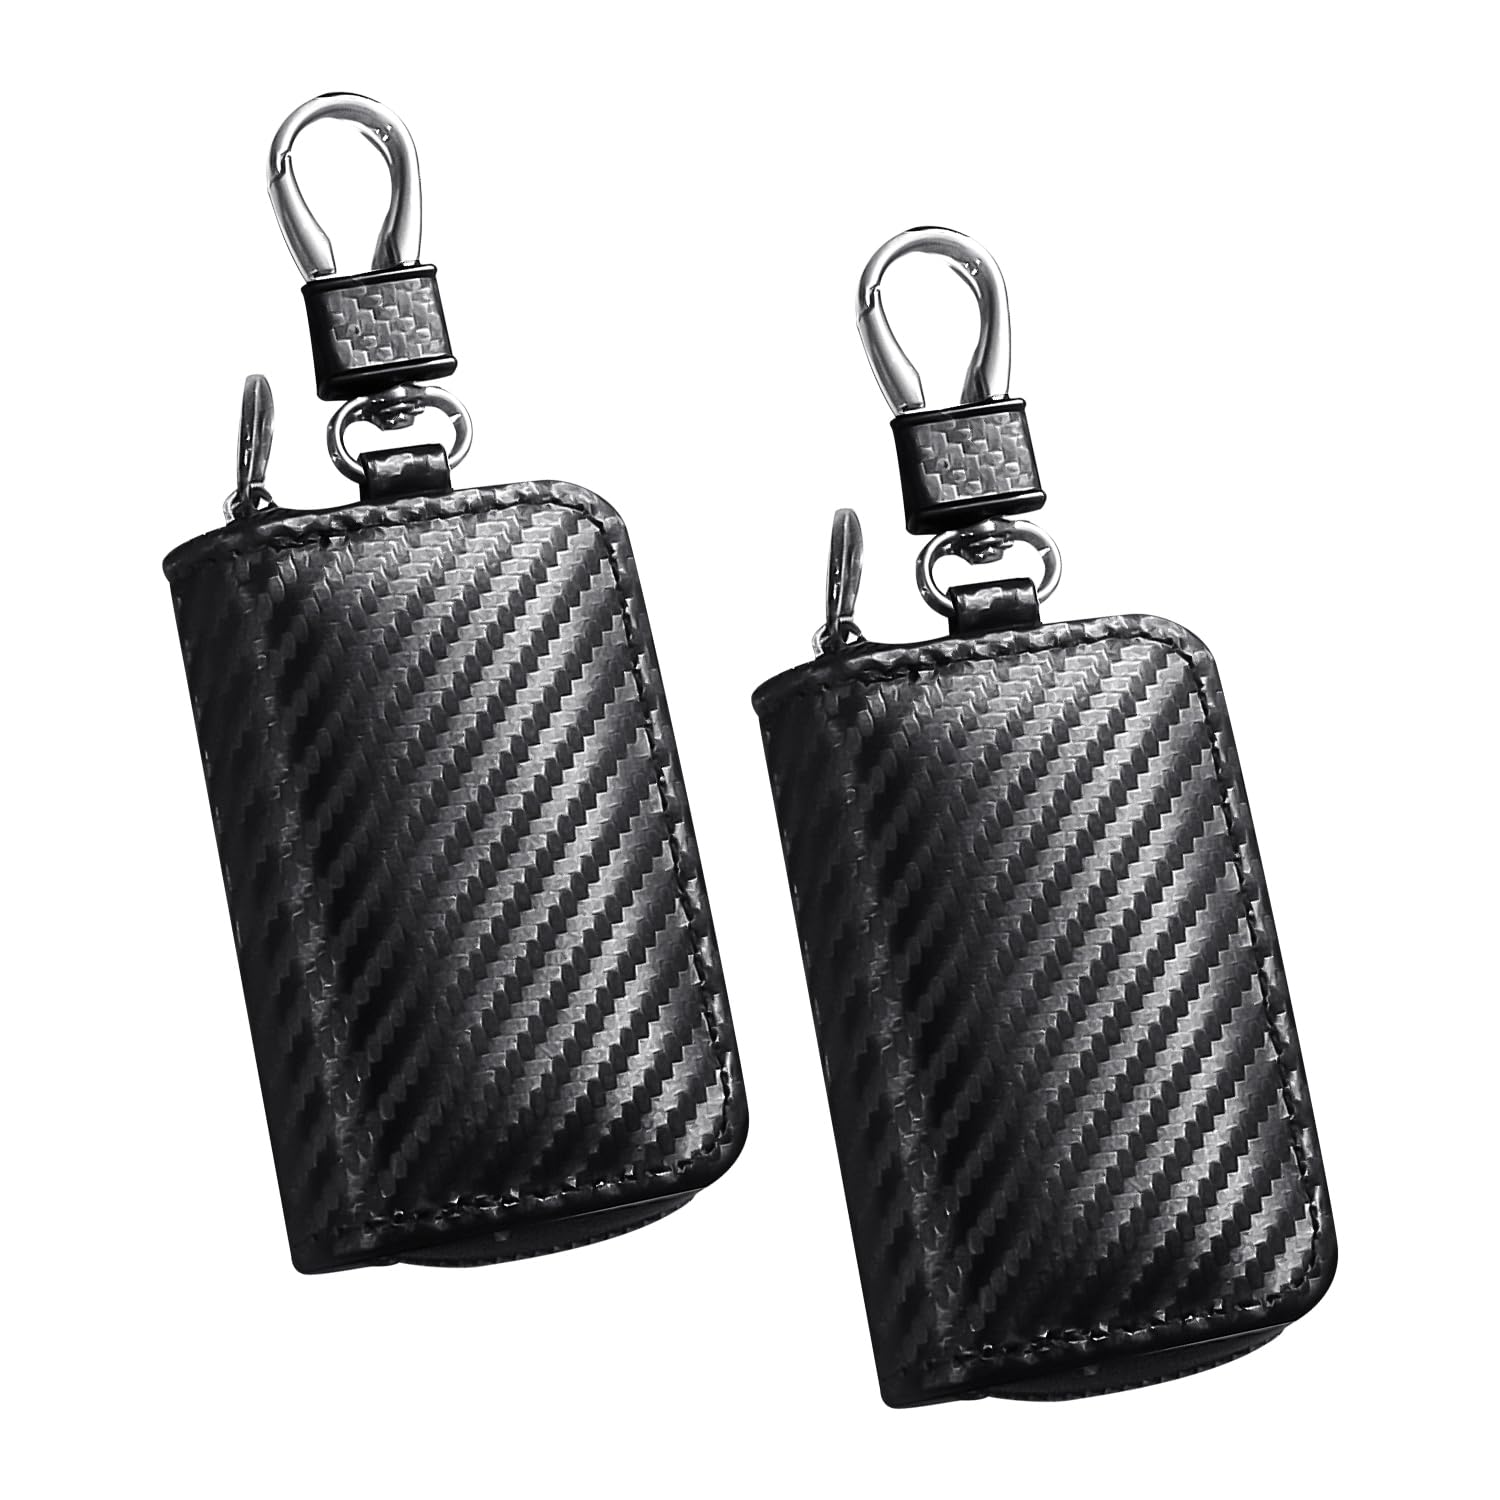 2 Stück schwarze Schlüsseltasche, Schlüsselsignal-Abschirmungstasche, Schlüsselschutztasche, tragbare Tasche, Multifunktionstasche, modische Schlüsseltasche, praktisches Zubehör, Leder-Schlüsseltasche von HDGSAFD